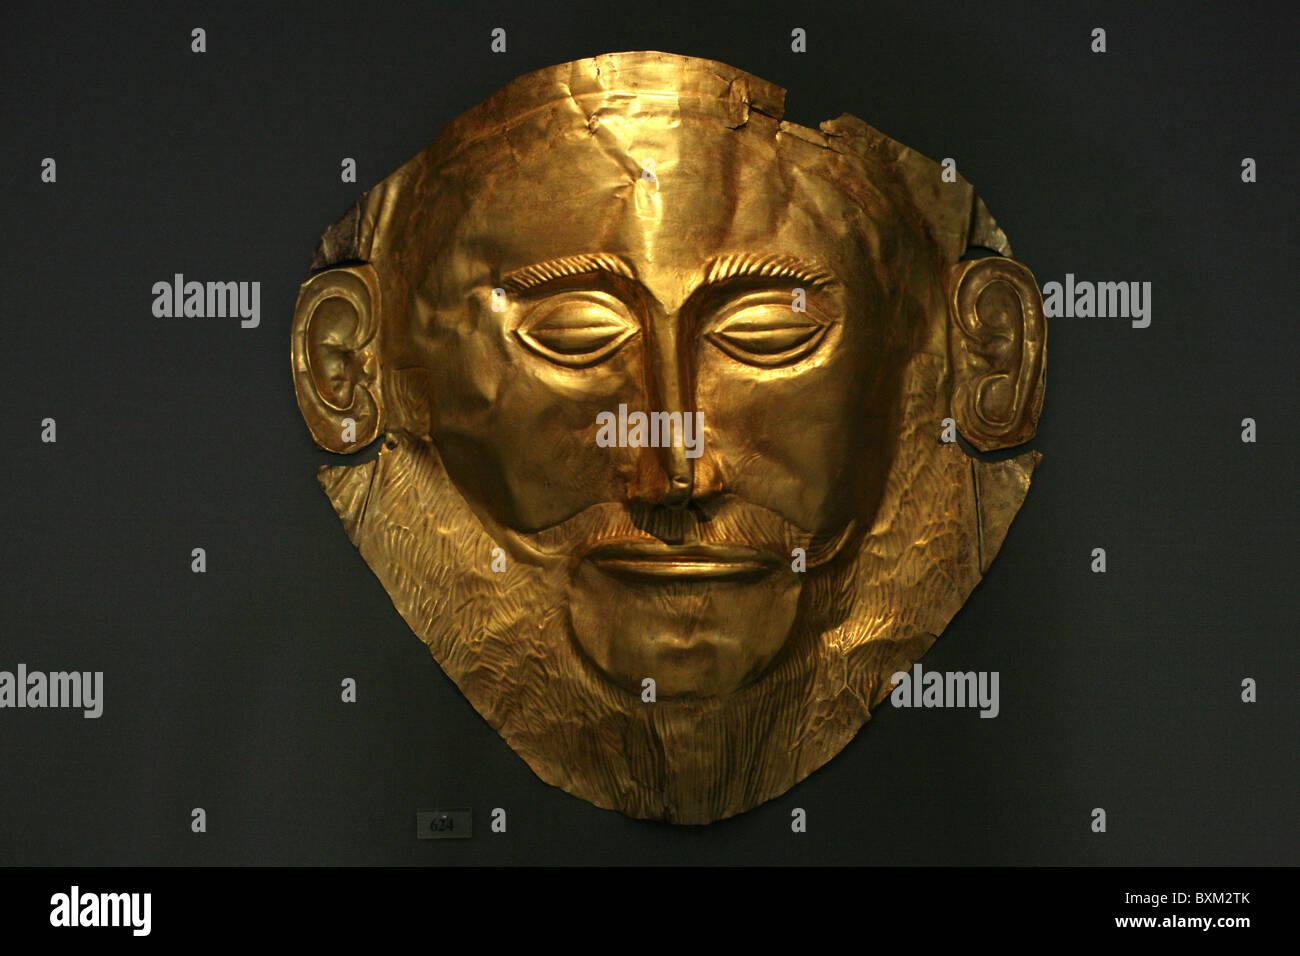 Masque funéraire en or d'Agamemnon de Mycènes dans le Musée Archéologique National à Athènes, Grèce. Banque D'Images